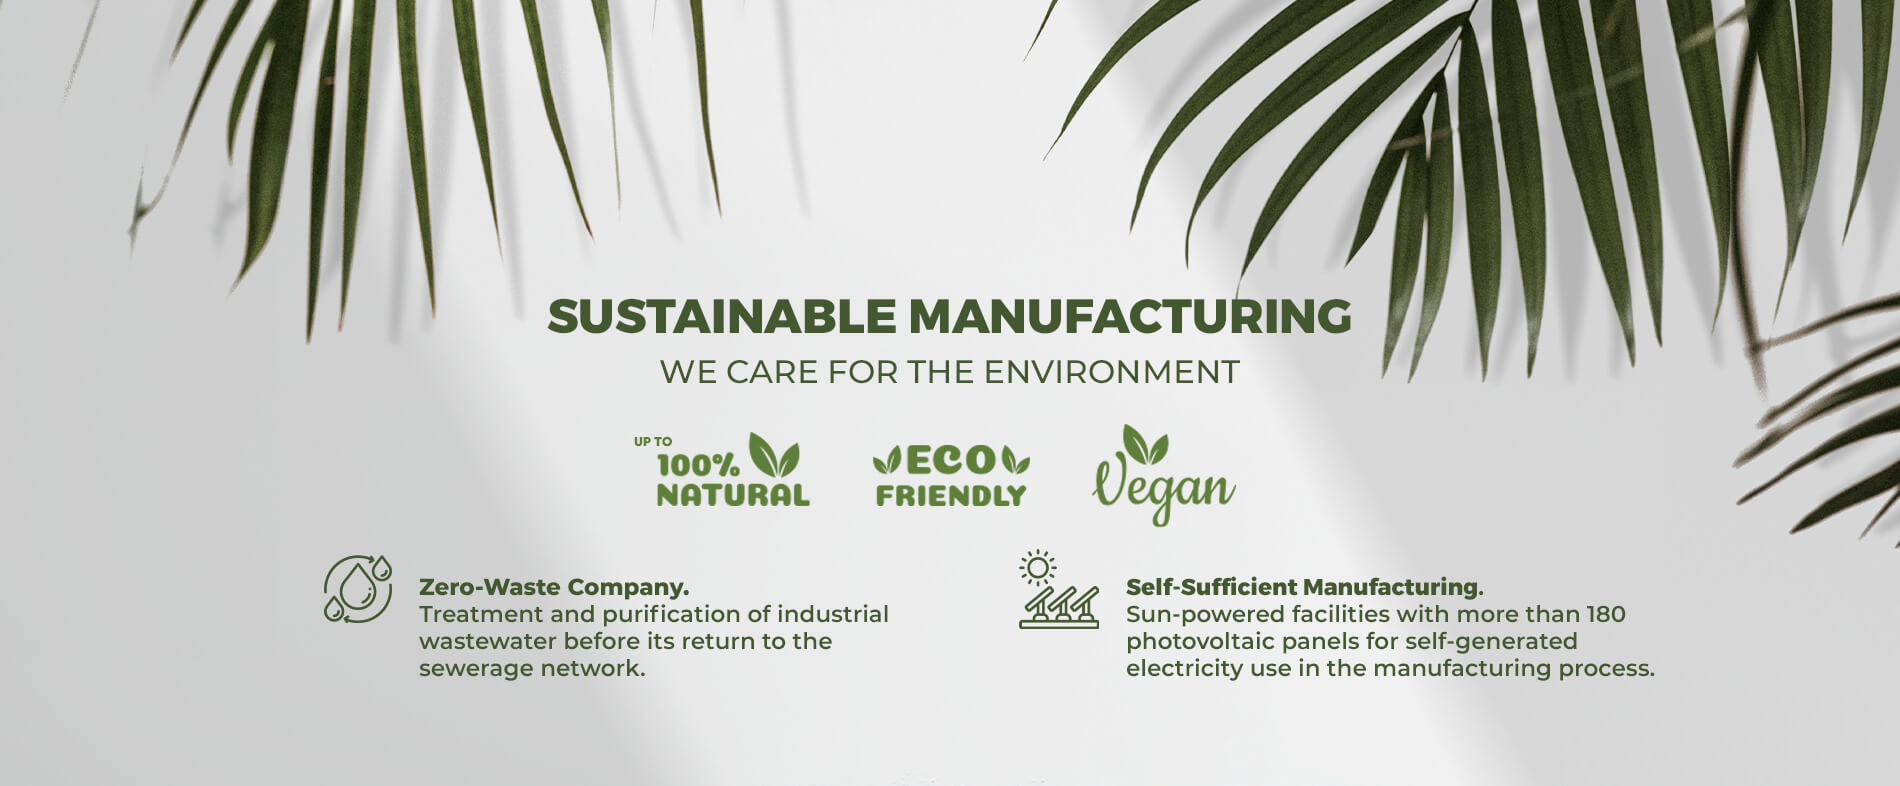 Fabricación sostenible